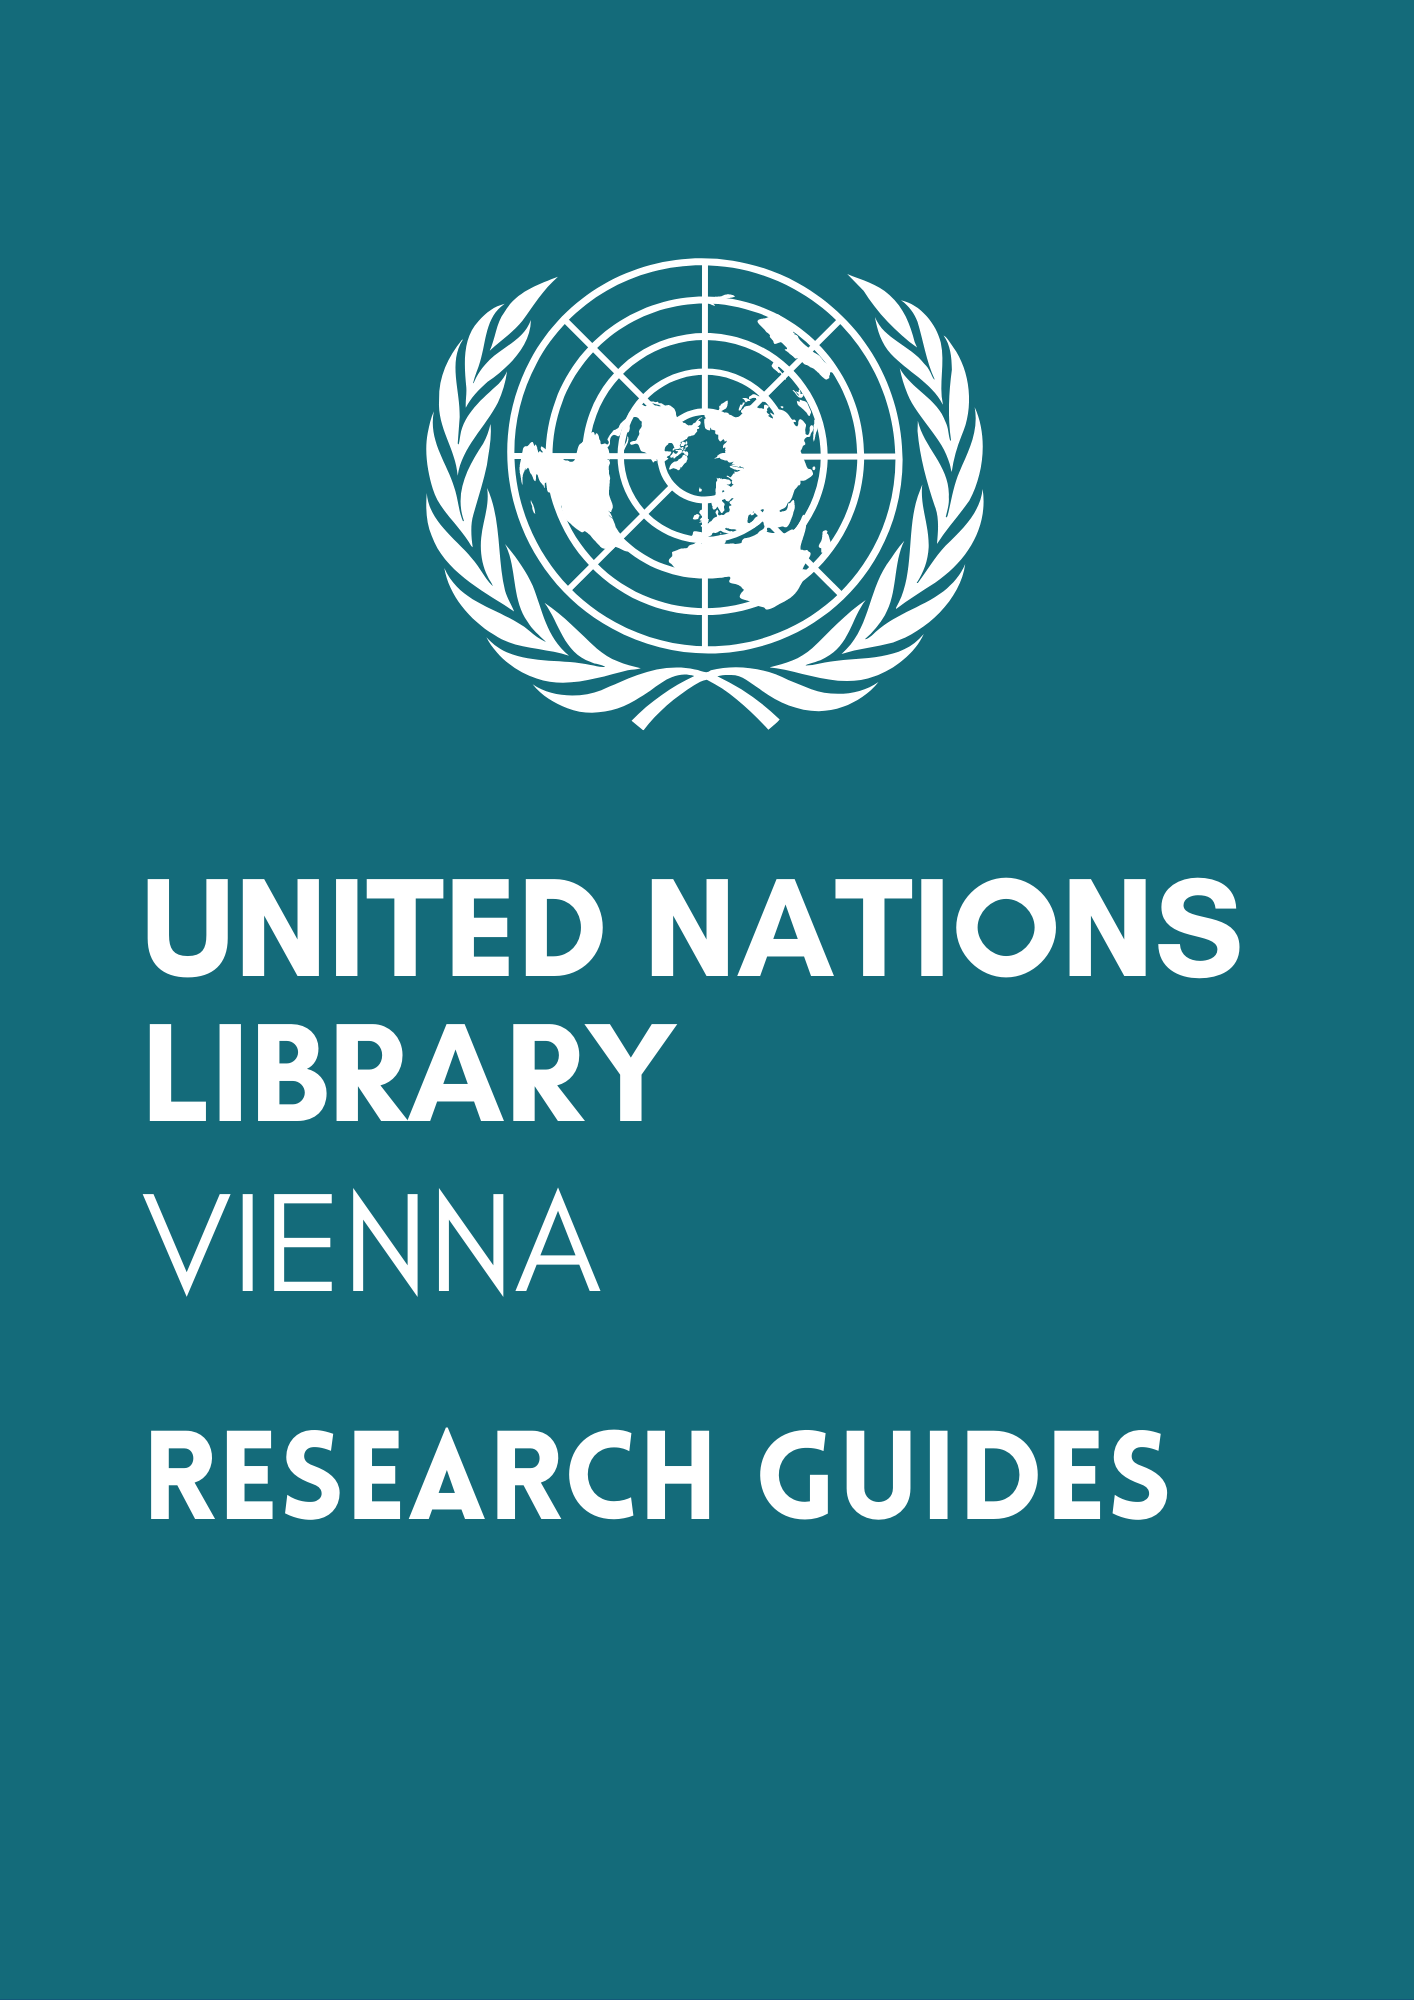 <div style="text-align: center;"><a href="https://libraryresearch.unvienna.org/organizedcrime">Guías de investigación de la Biblioteca de las Naciones Unidas - Viena</a></div>